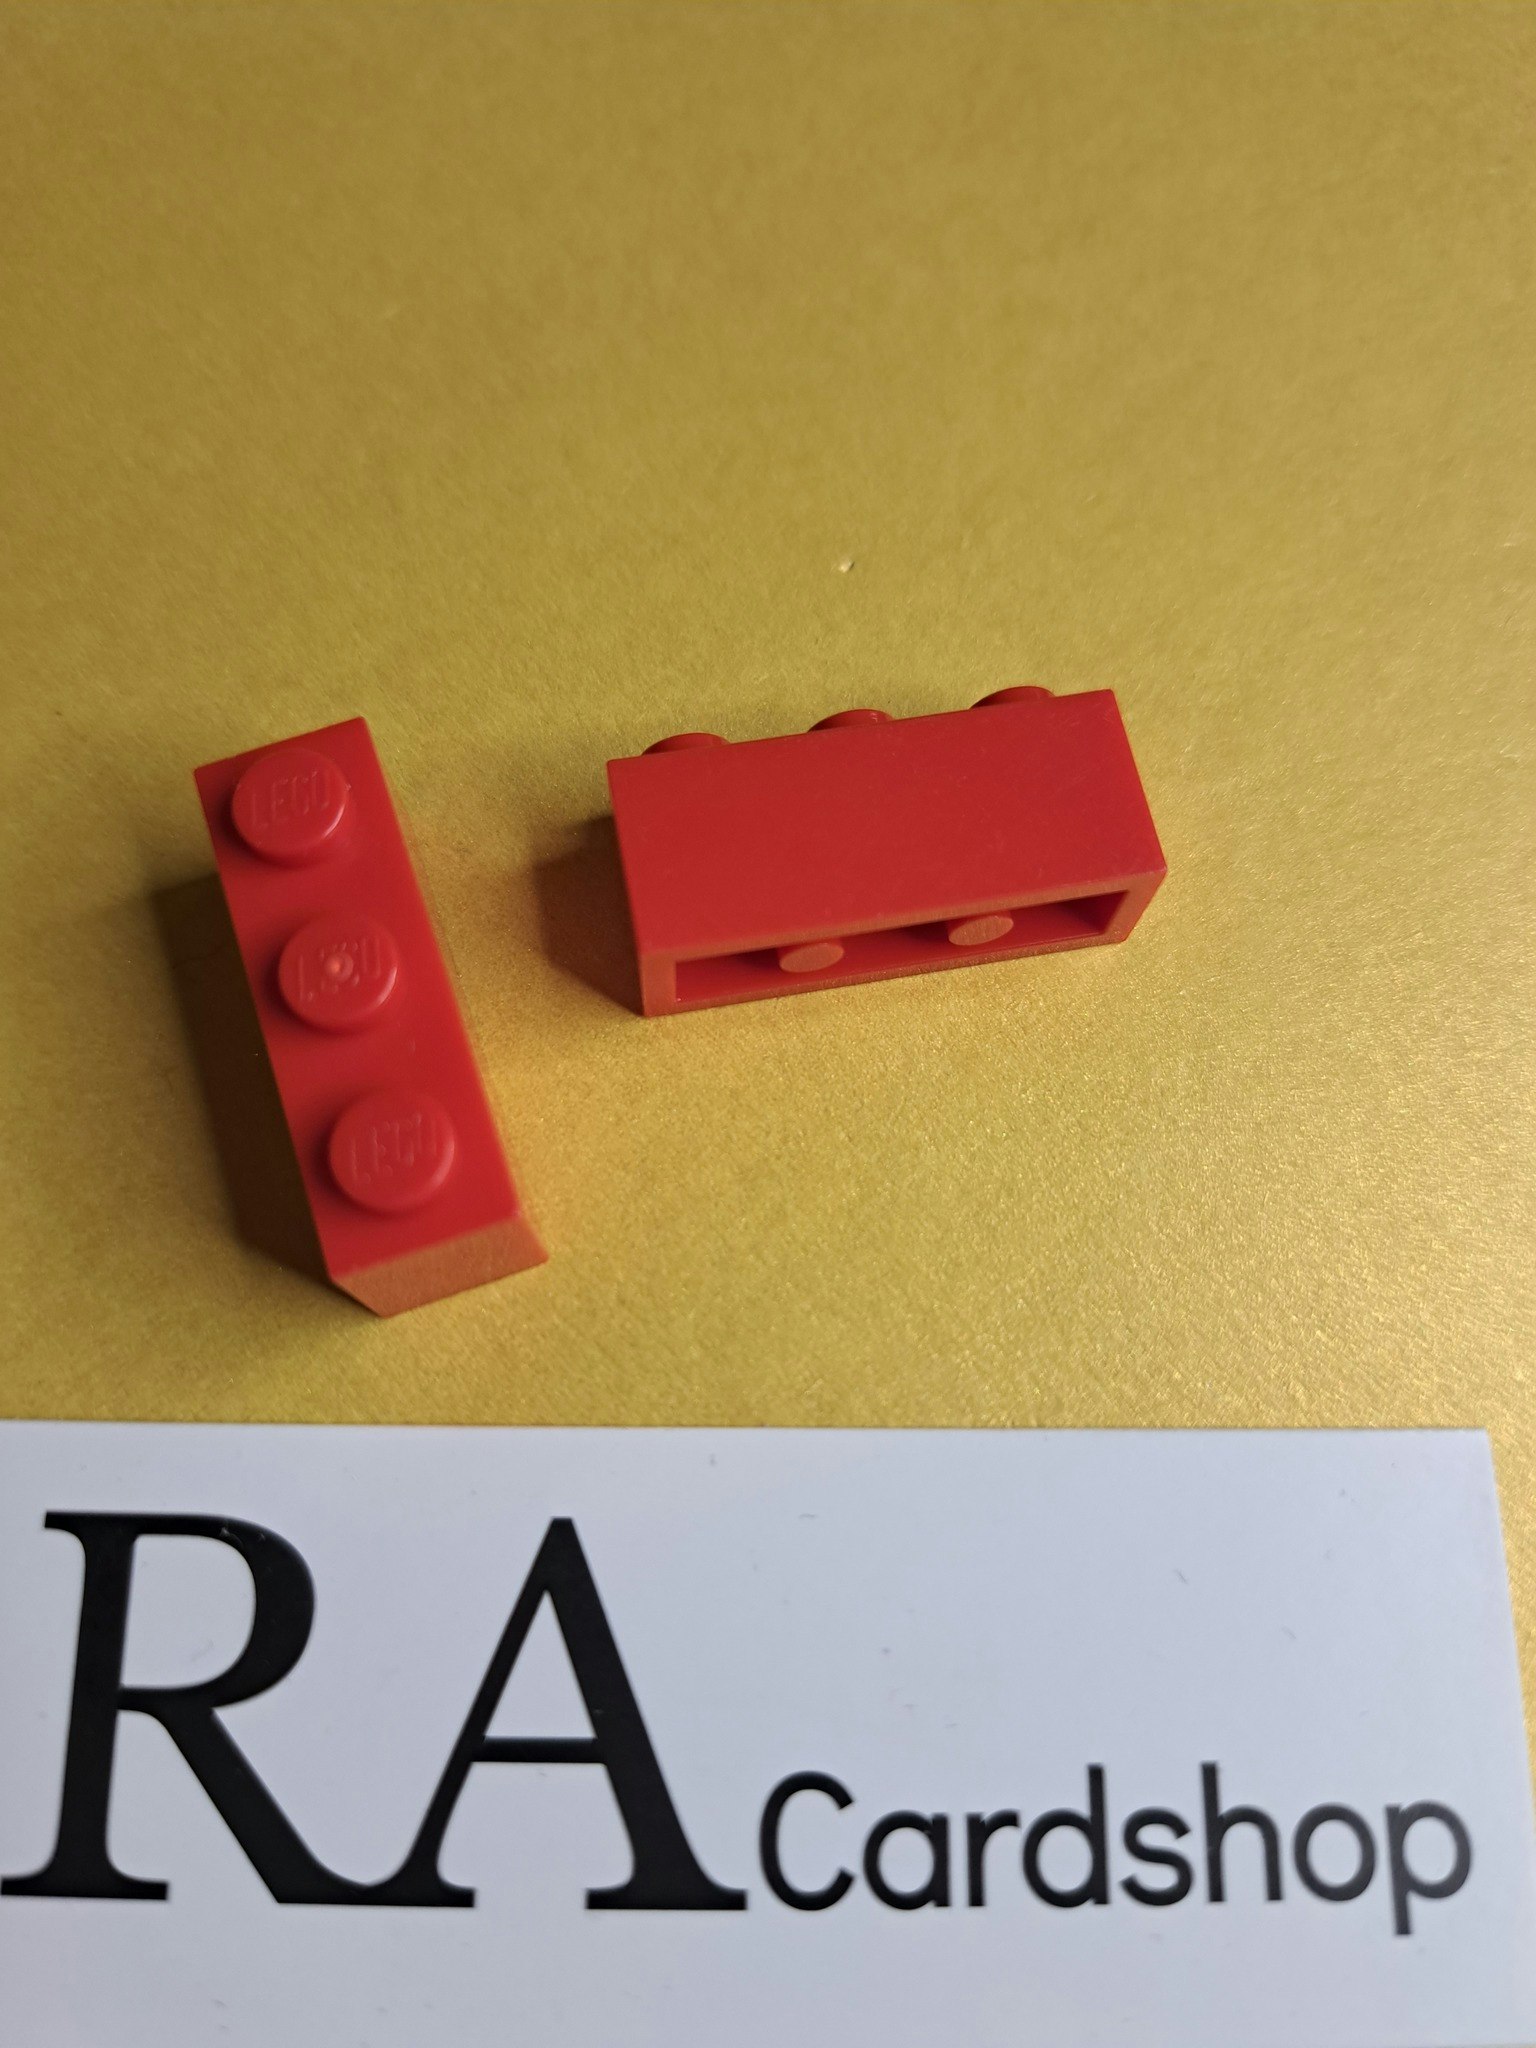 3622 Brick 1 x 3 Röd Lego